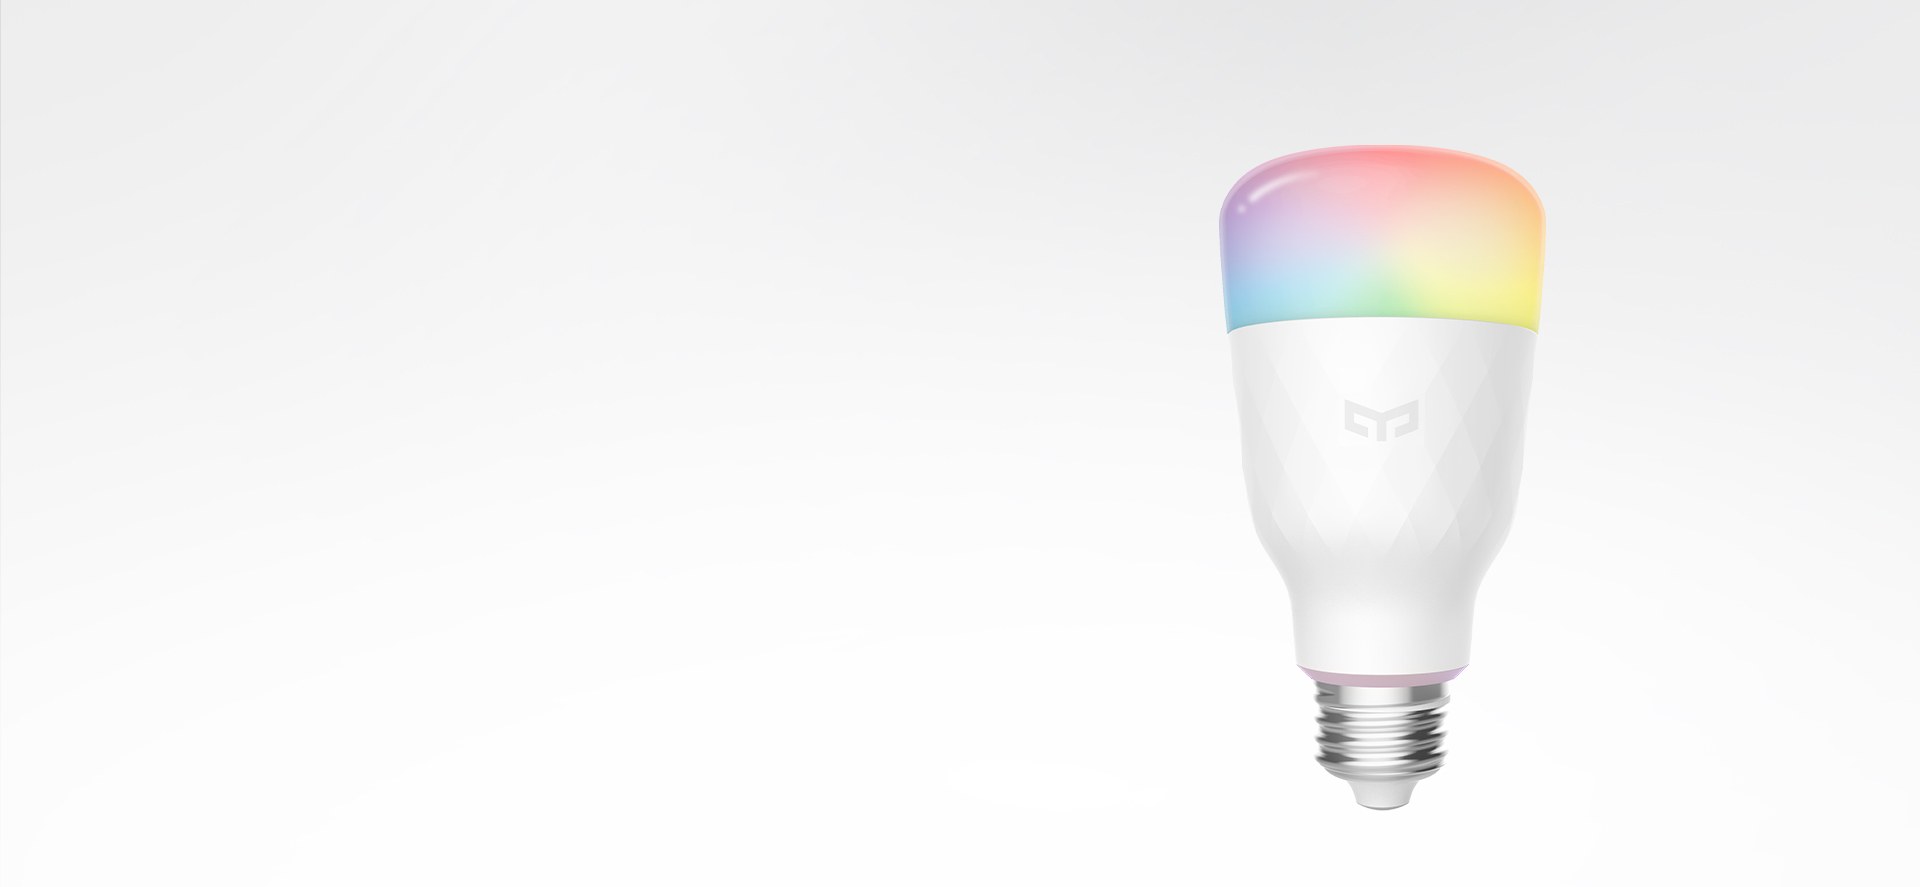 Yeelight color smart LED Bulb 1S AUT::1431